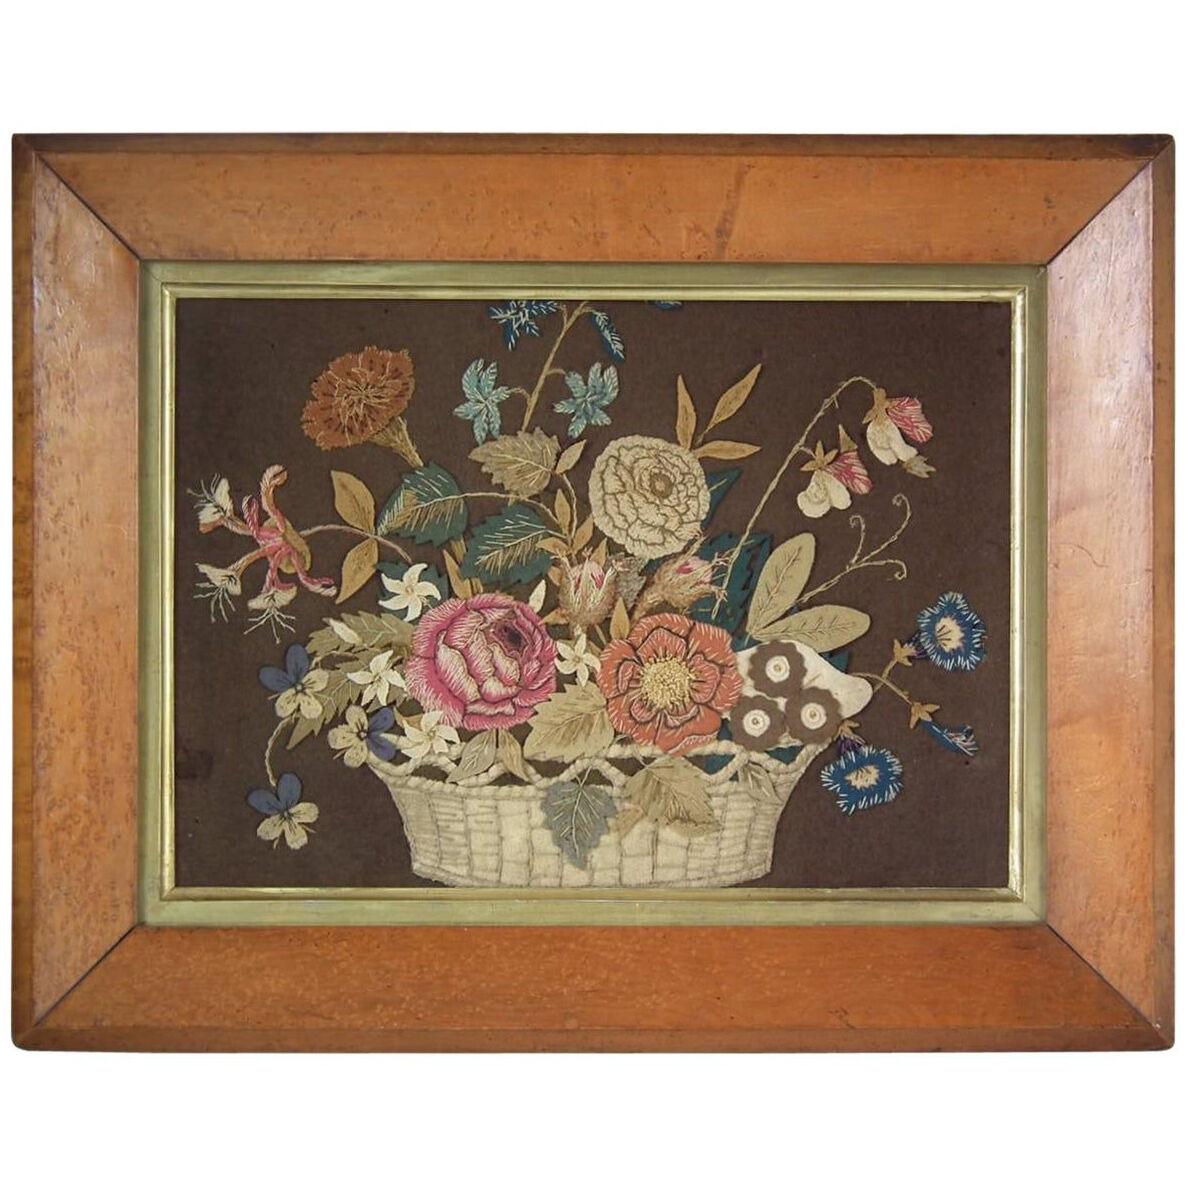 Antique Flower Basket Appliqué Embroidery